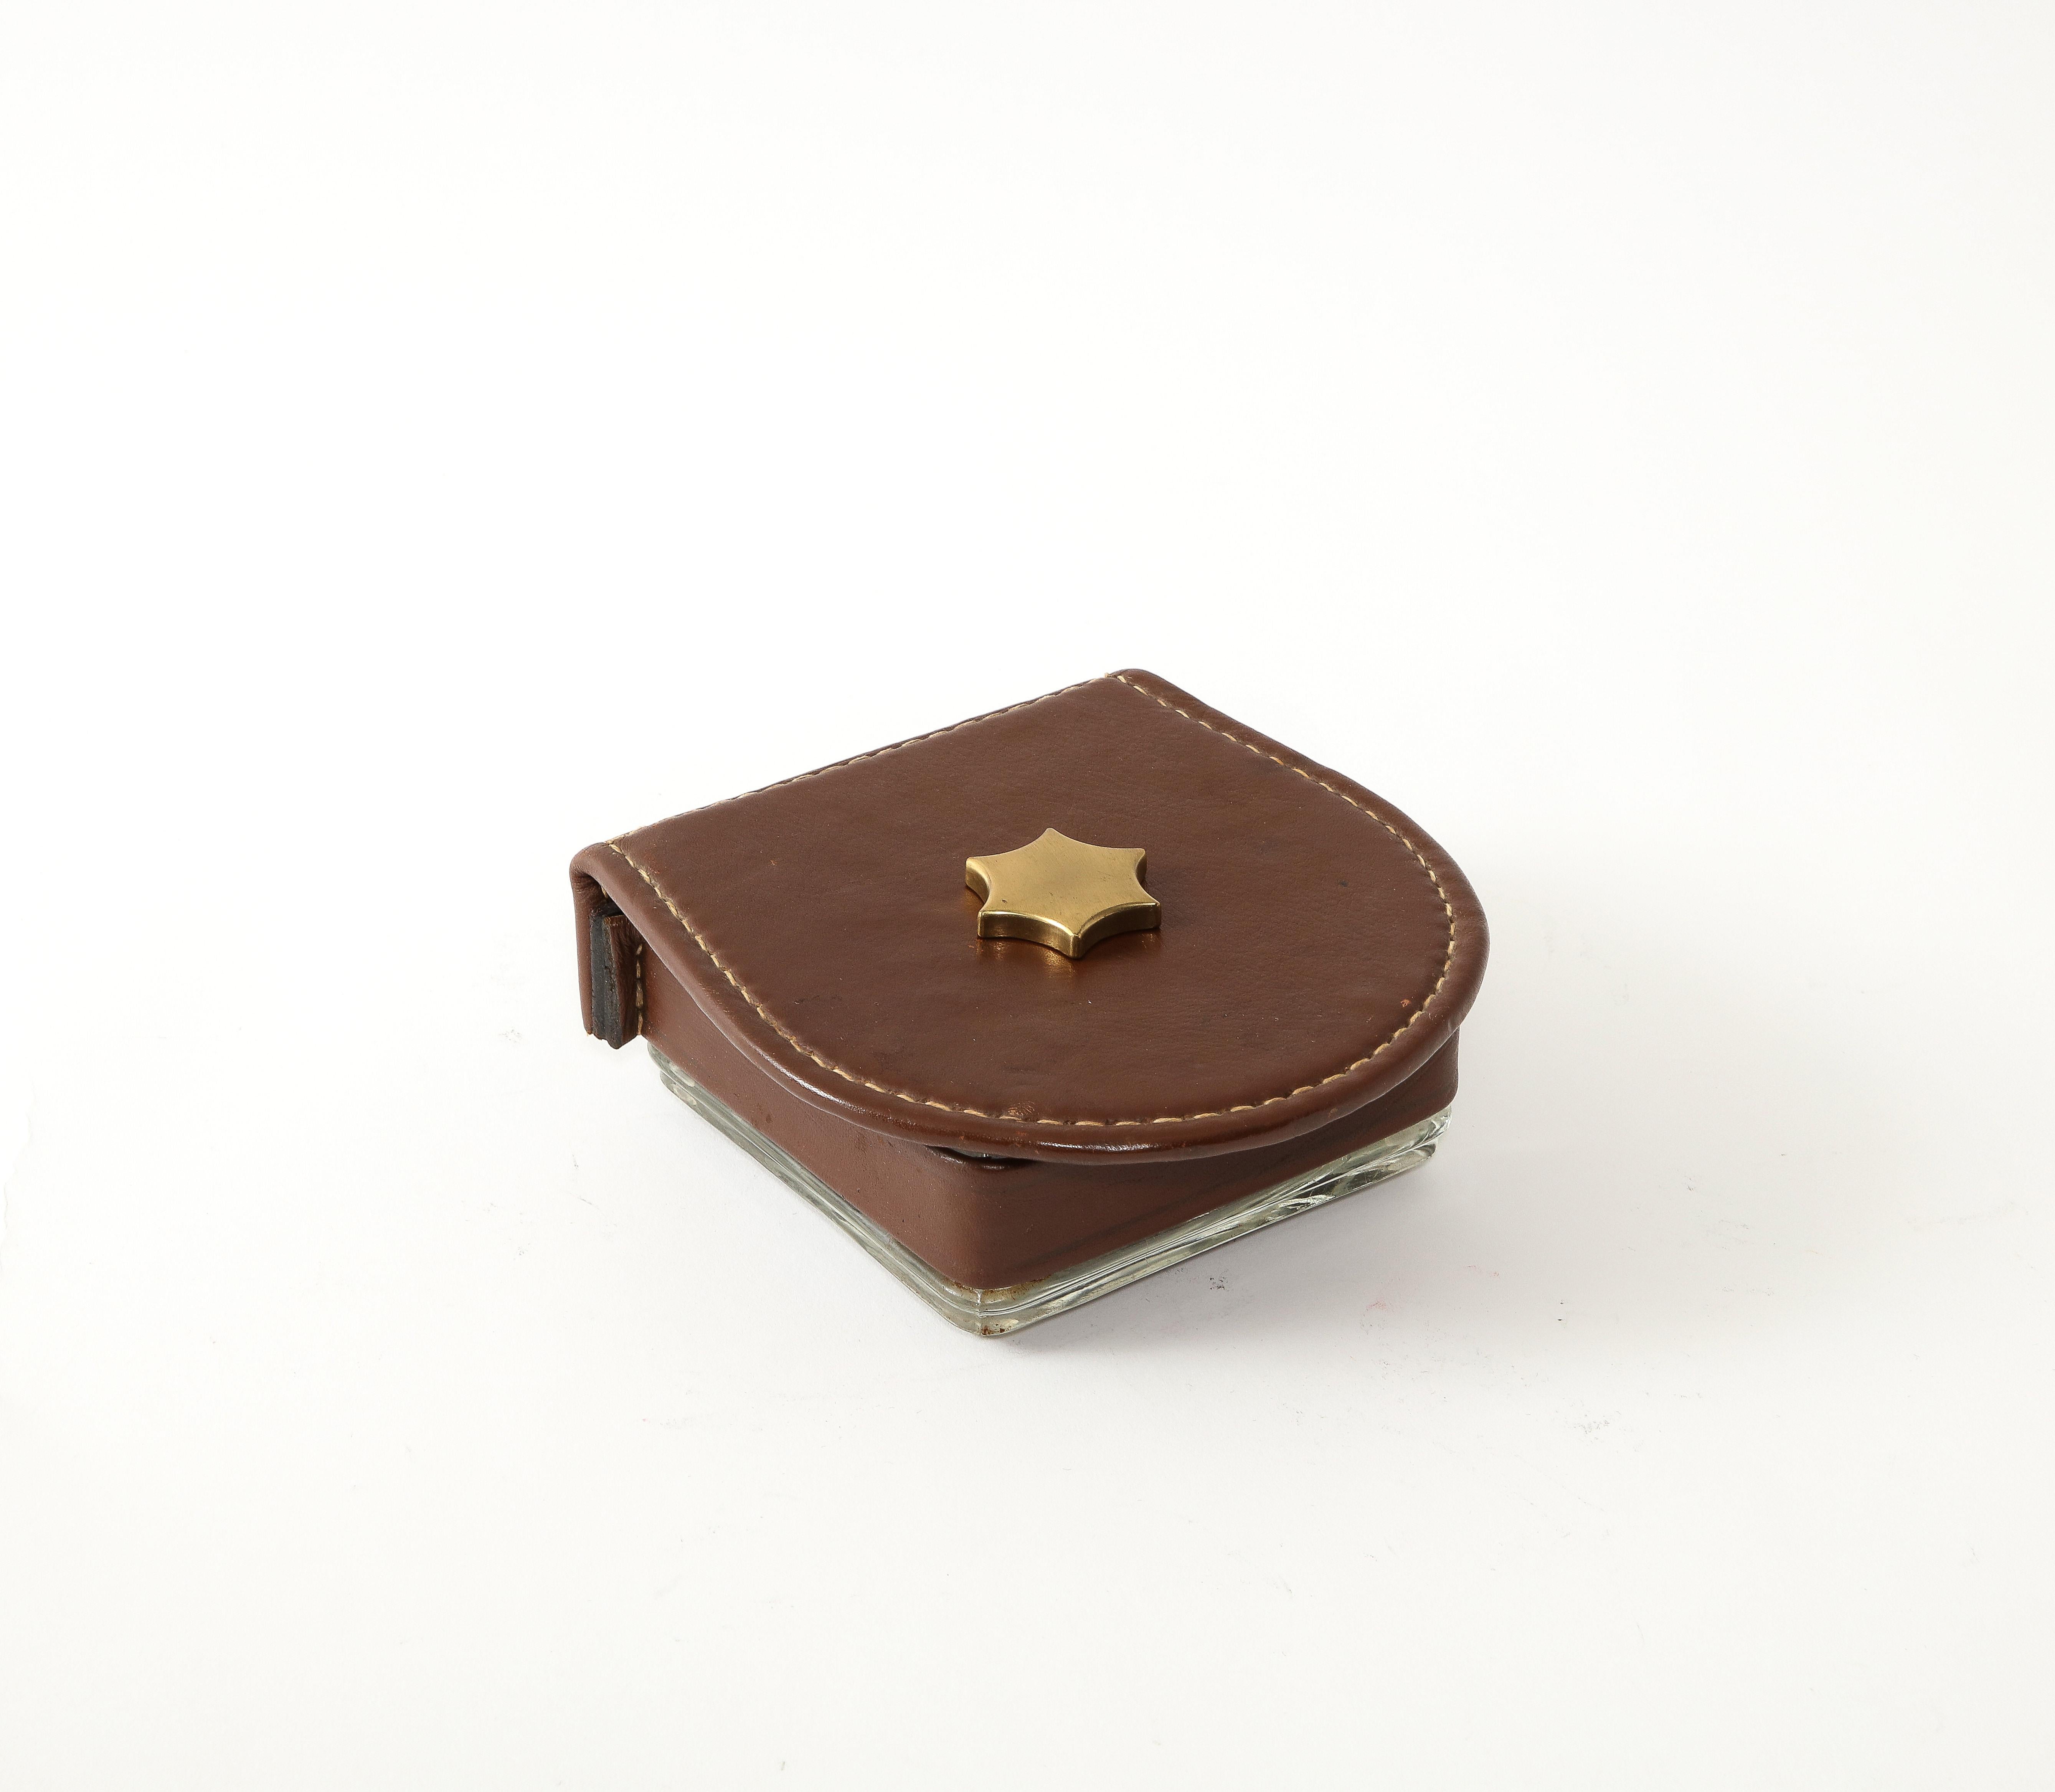 Boîte en verre moulé à couvercle en cuir avec une étoile en bronze.